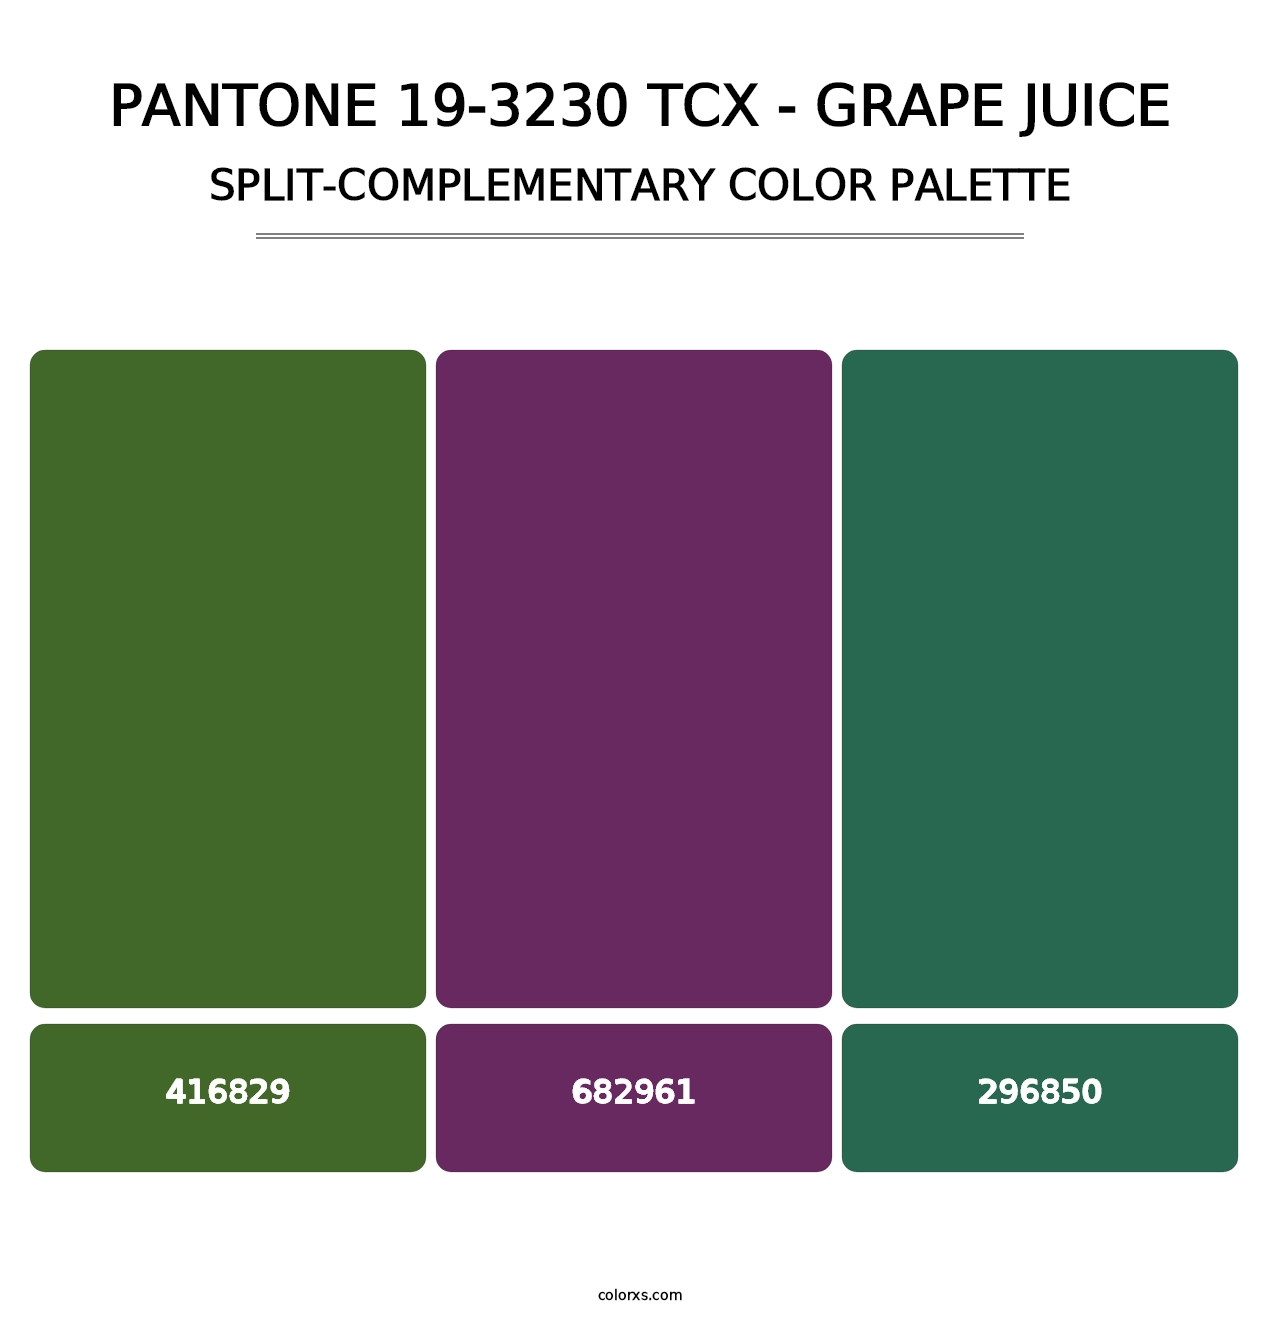 PANTONE 19-3230 TCX - Grape Juice - Split-Complementary Color Palette